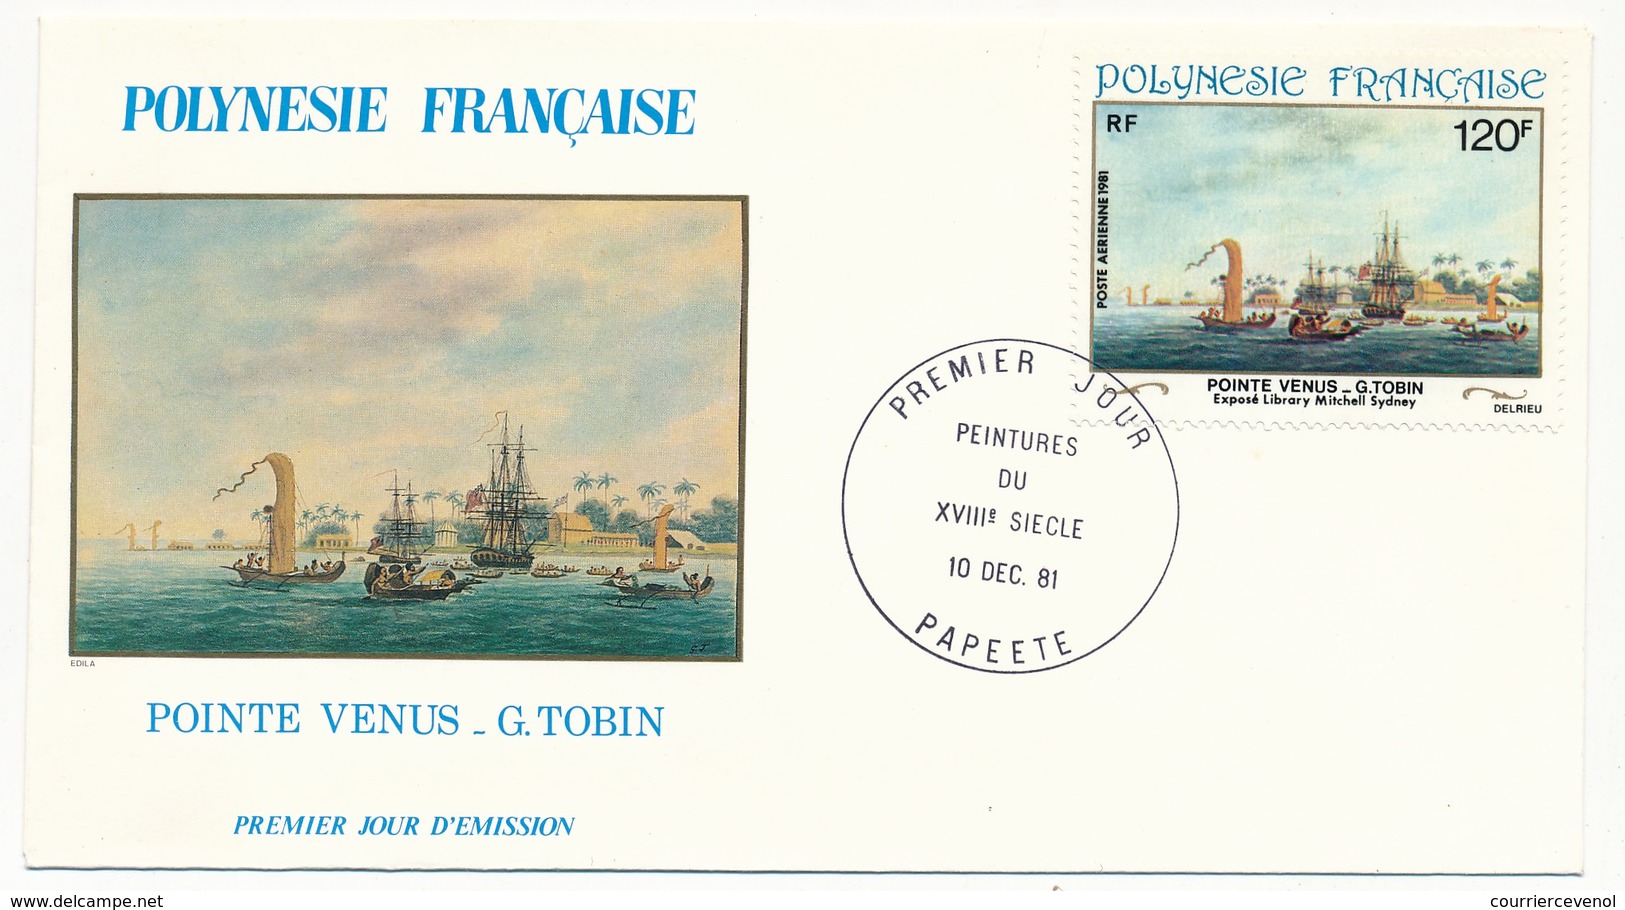 POLYNESIE FRANCAISE - 4 FDC - Peintures Du 18eme Siècle - 10 Dec 1981 - Papeete - FDC